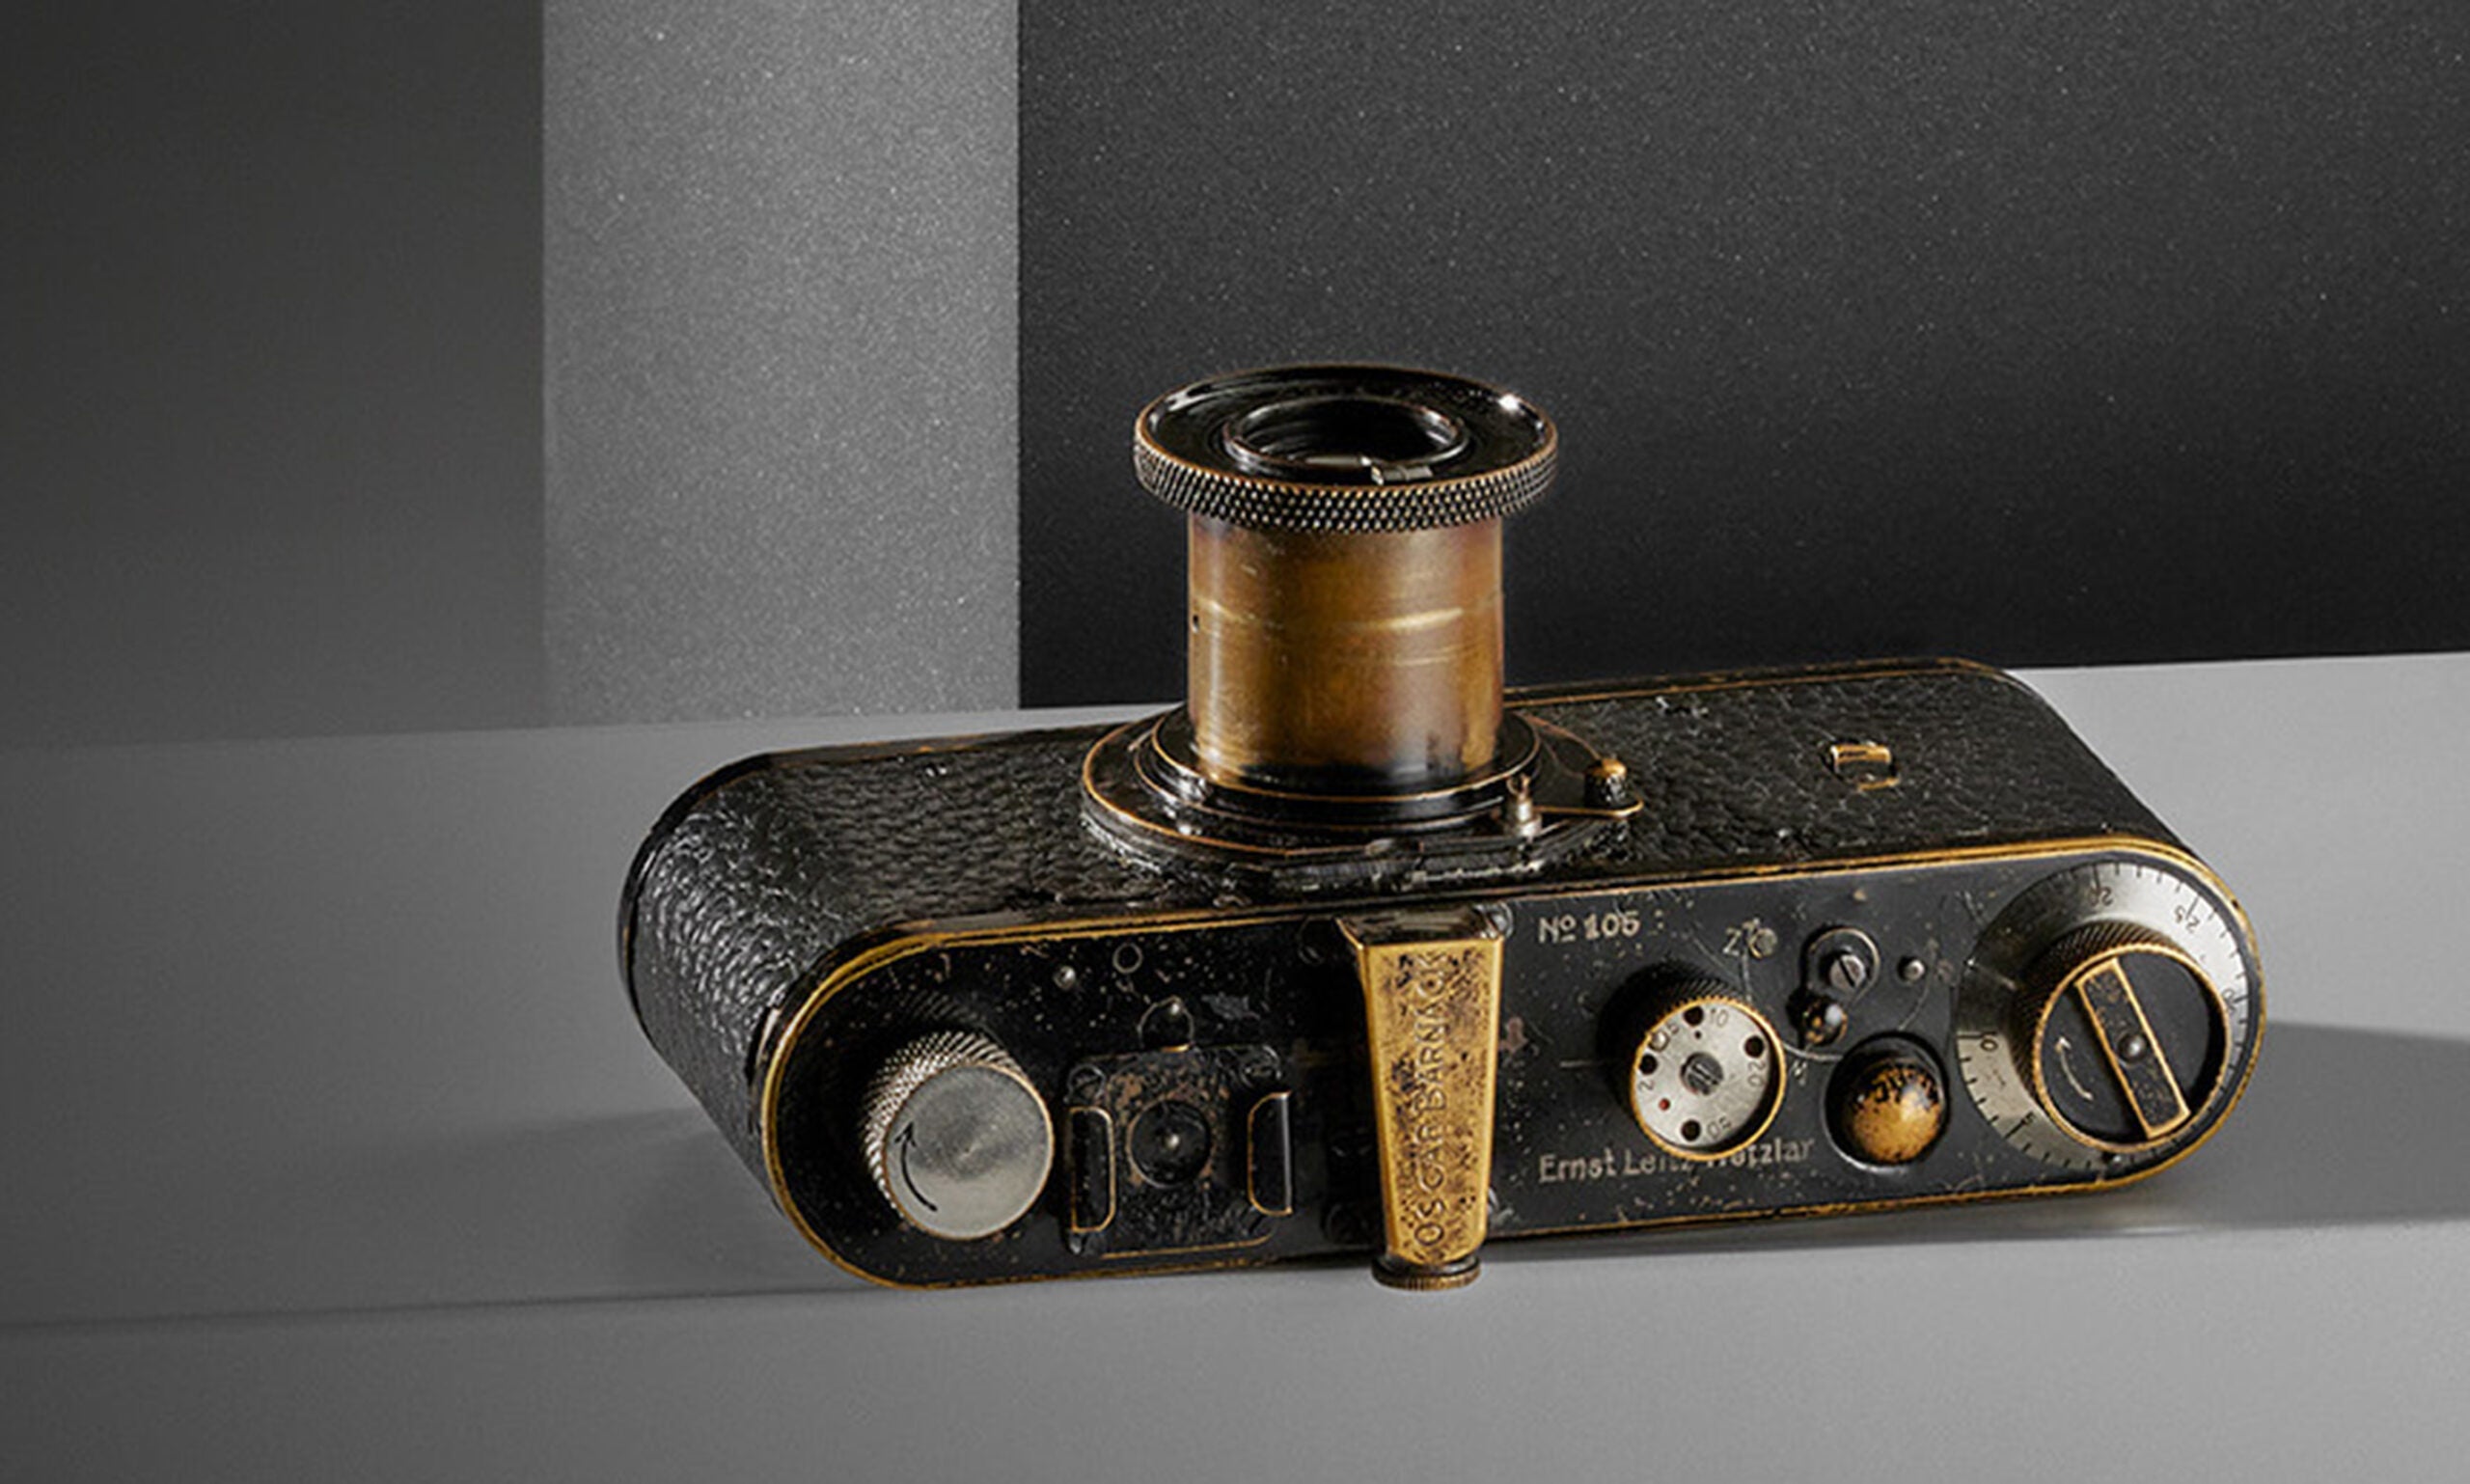 The Leica 0-series no. 105 âOskar Barnack.â